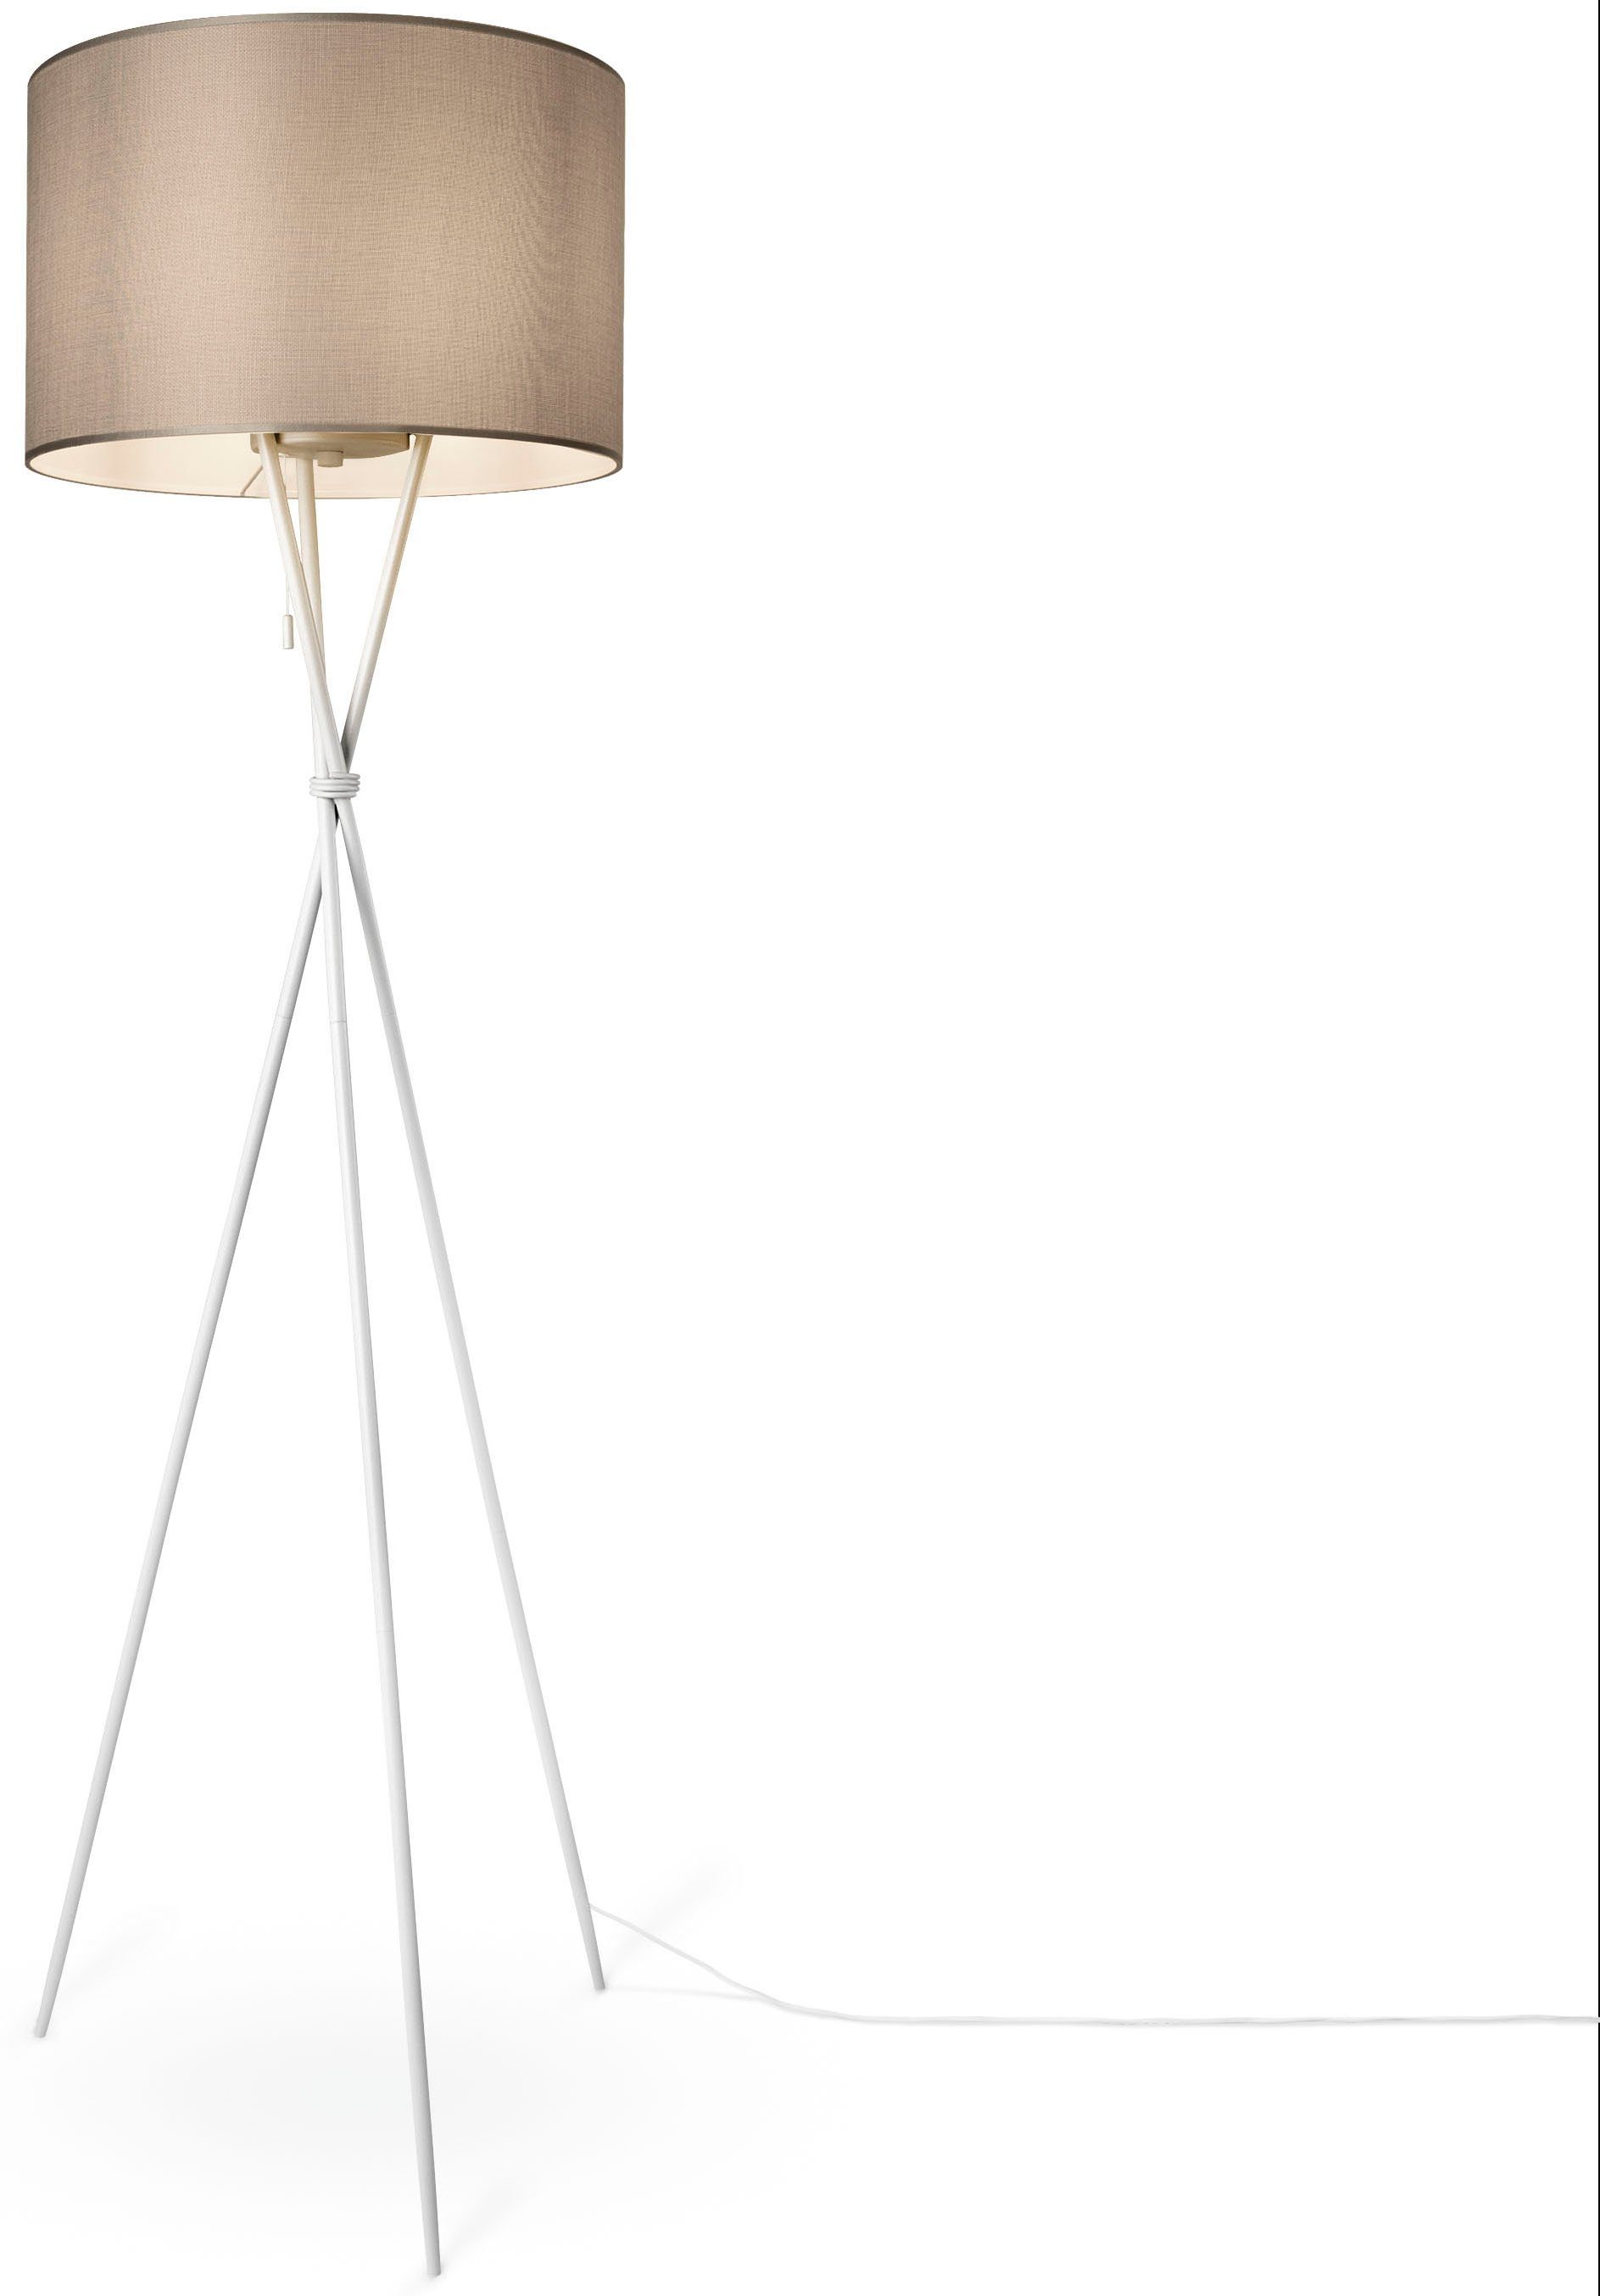 Paco COLOR, Stehlampe Schirm KATE Textil E27 weiß Dreibein Wohnzimmer Stoffschirmlampe Home grau Standleuchte UNI CANVAS Leuchtmittel, ohne